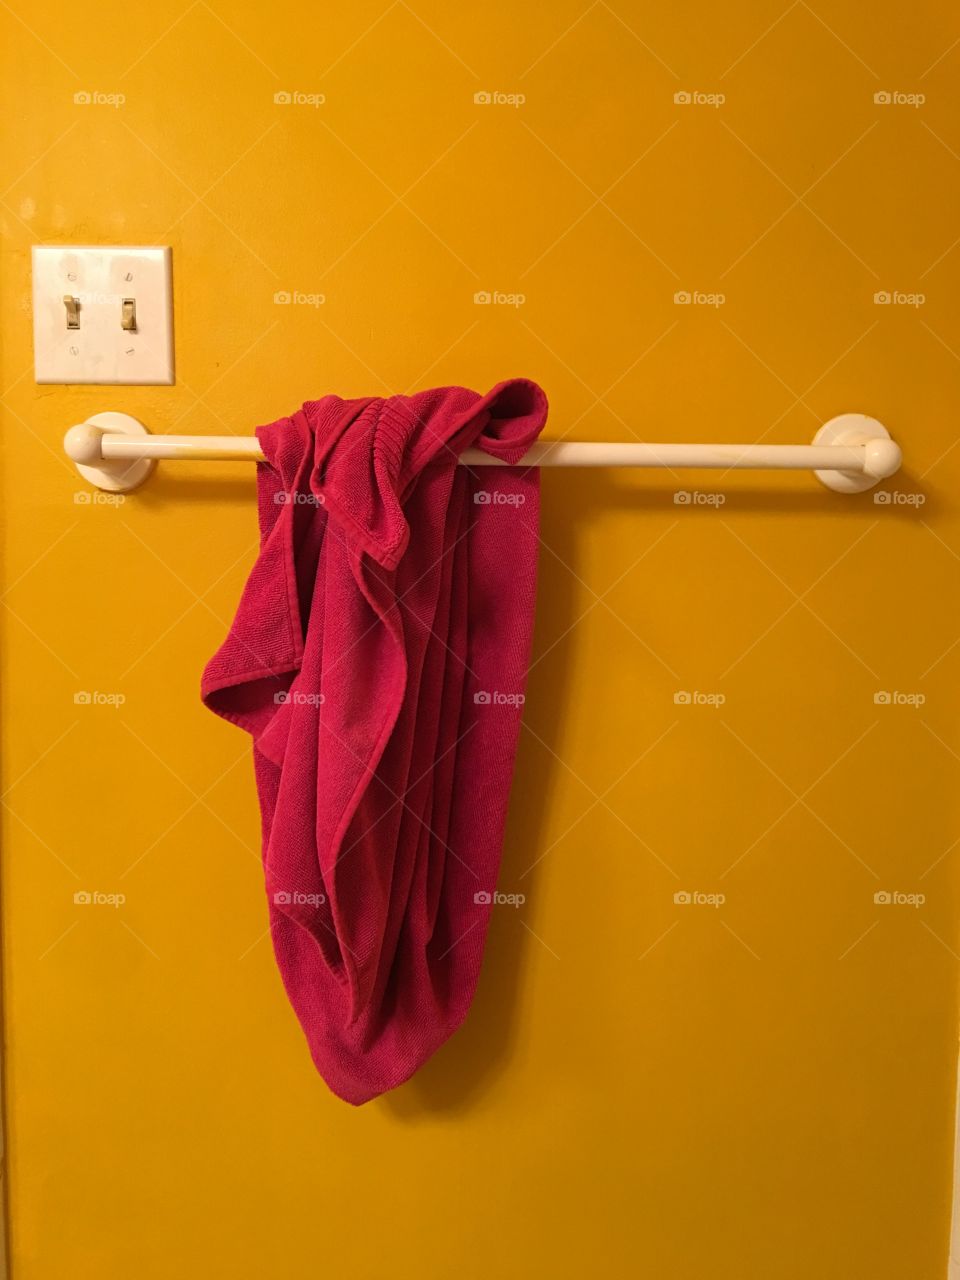 Towel on rack